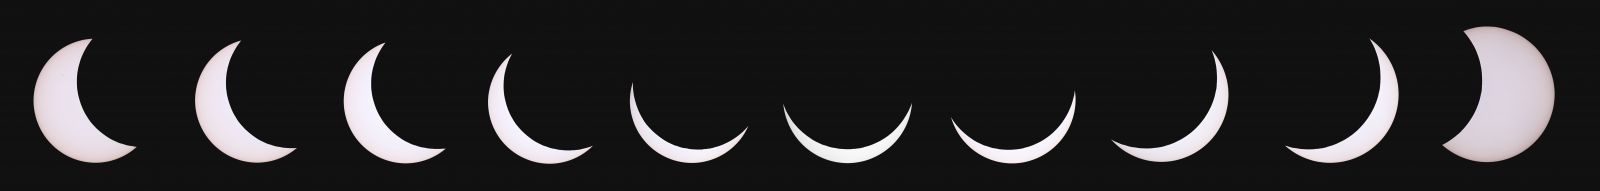 Partial Solar Eclipse UK 20-03-2015 Timelapse